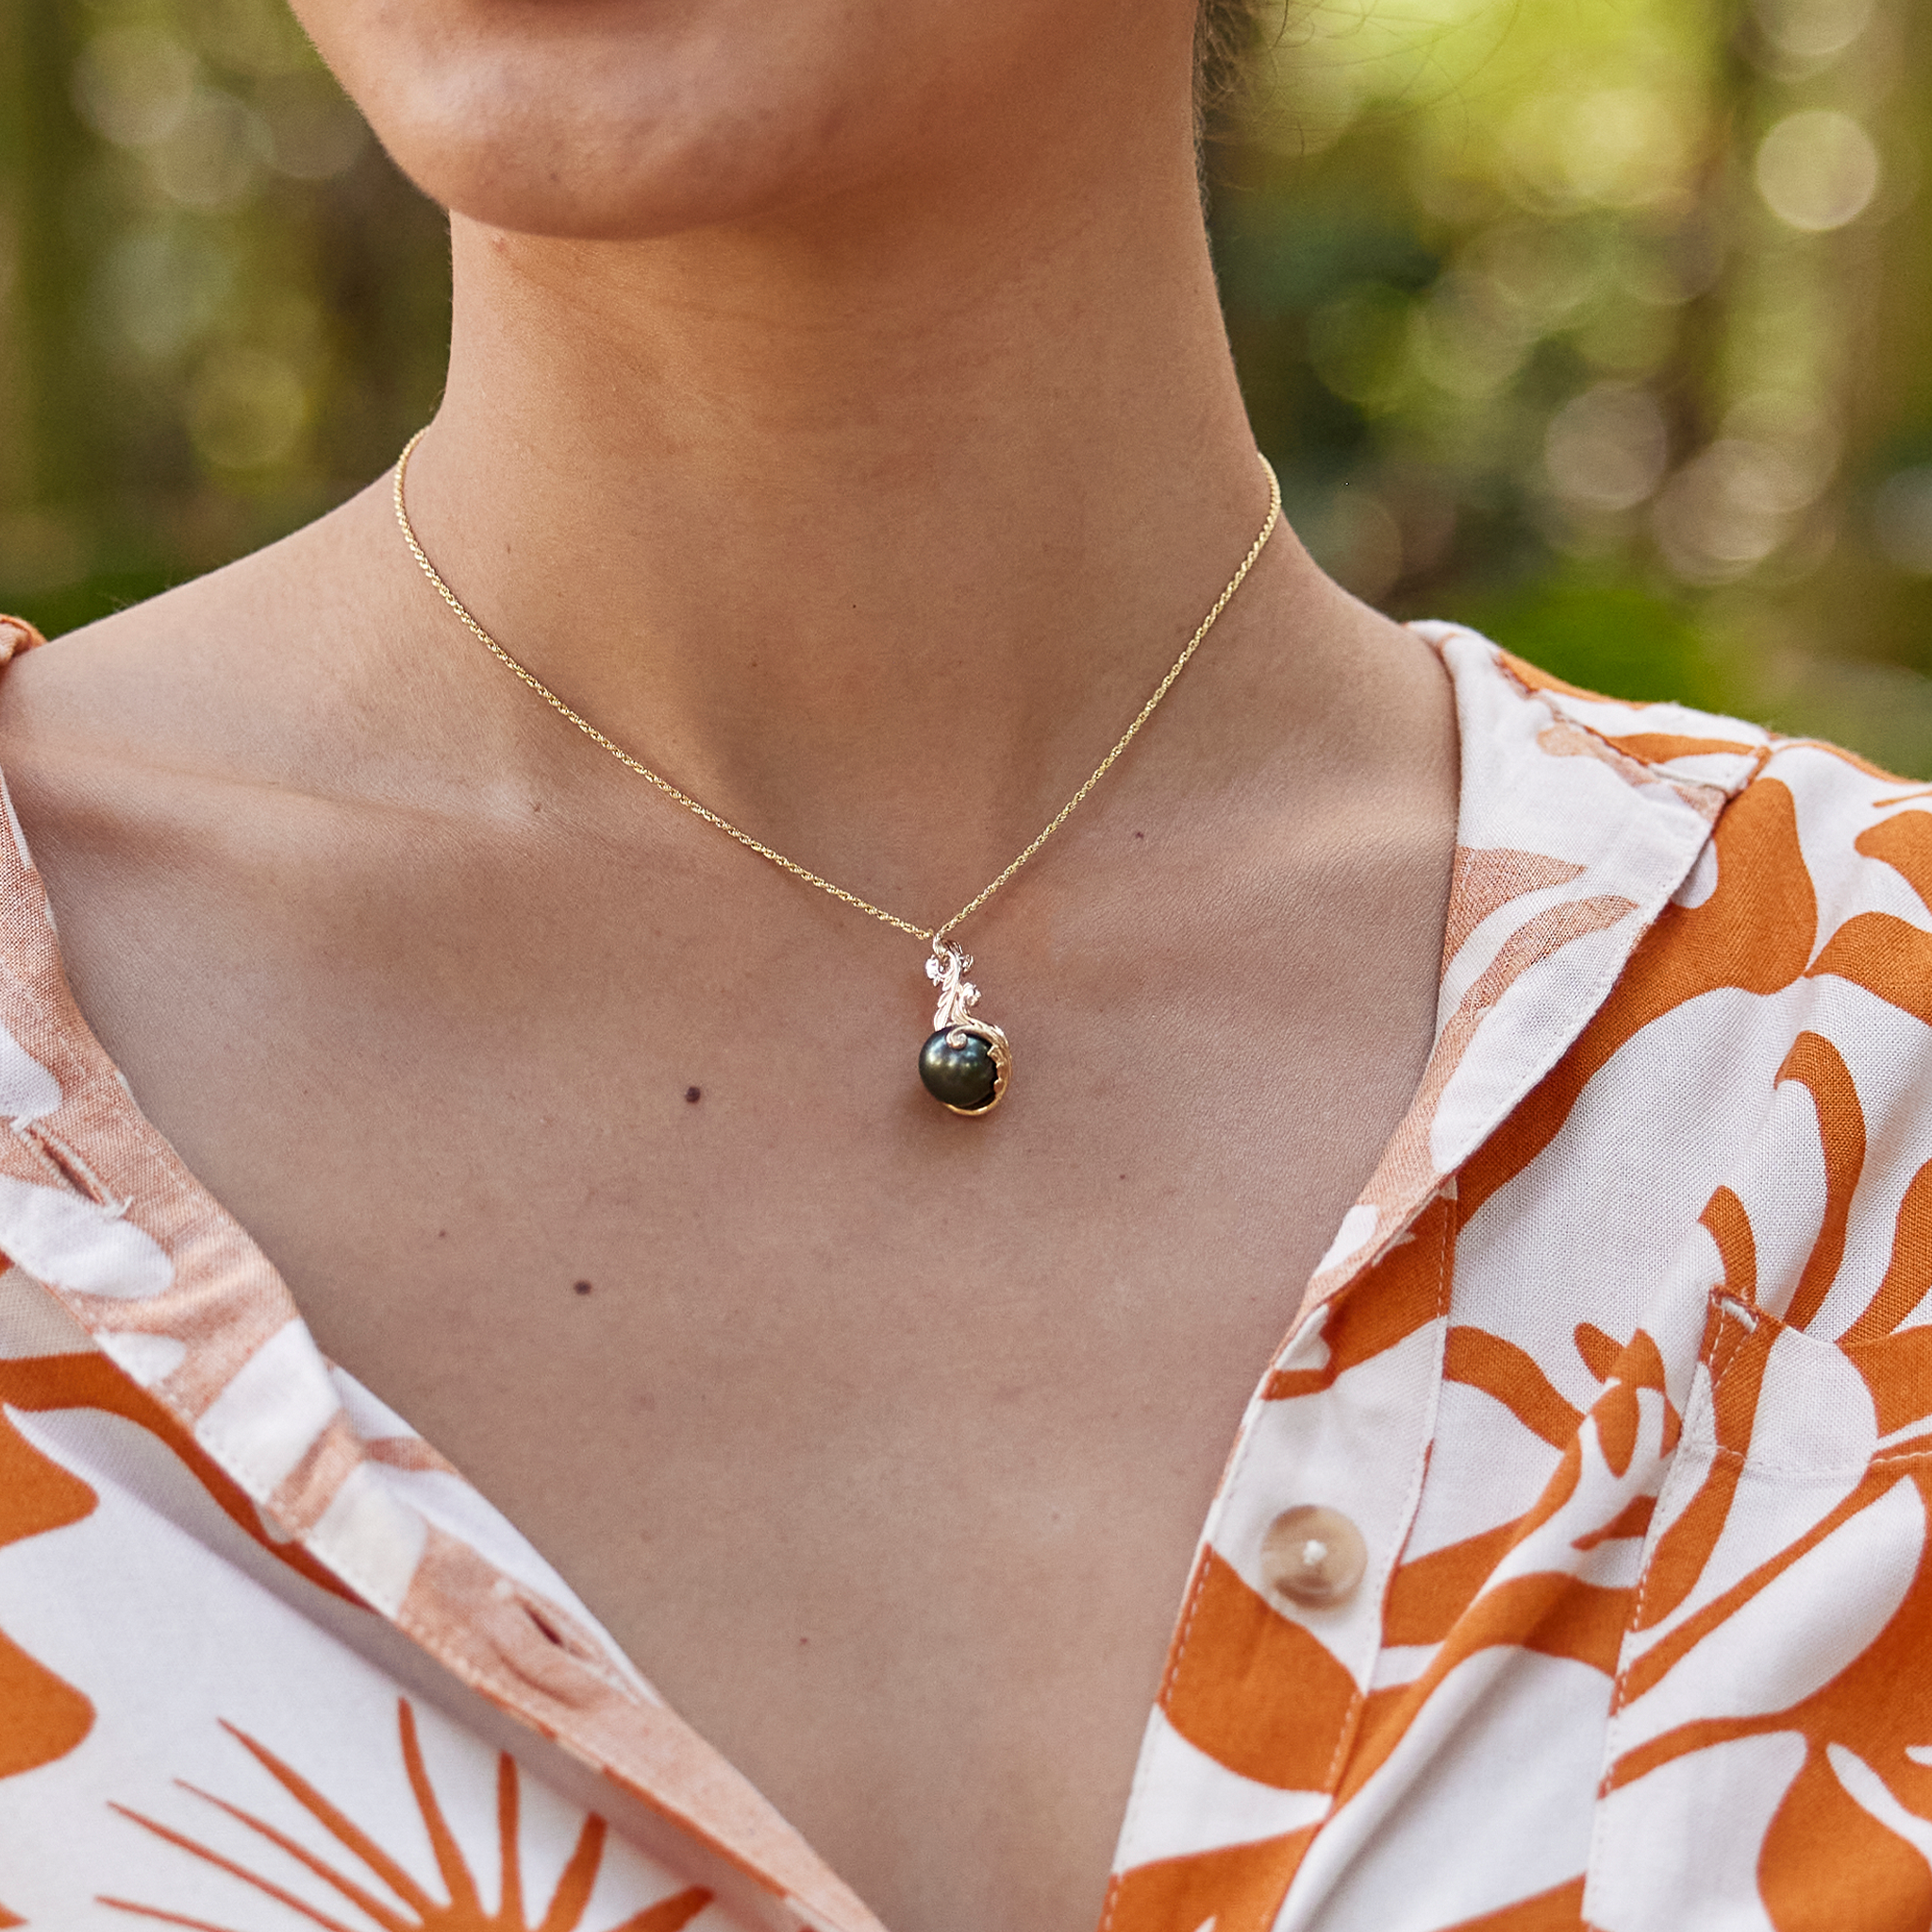 Héritage vivant Pendant le pendentif de perles noires tahitiennes en or avec des diamants -9-10 mm